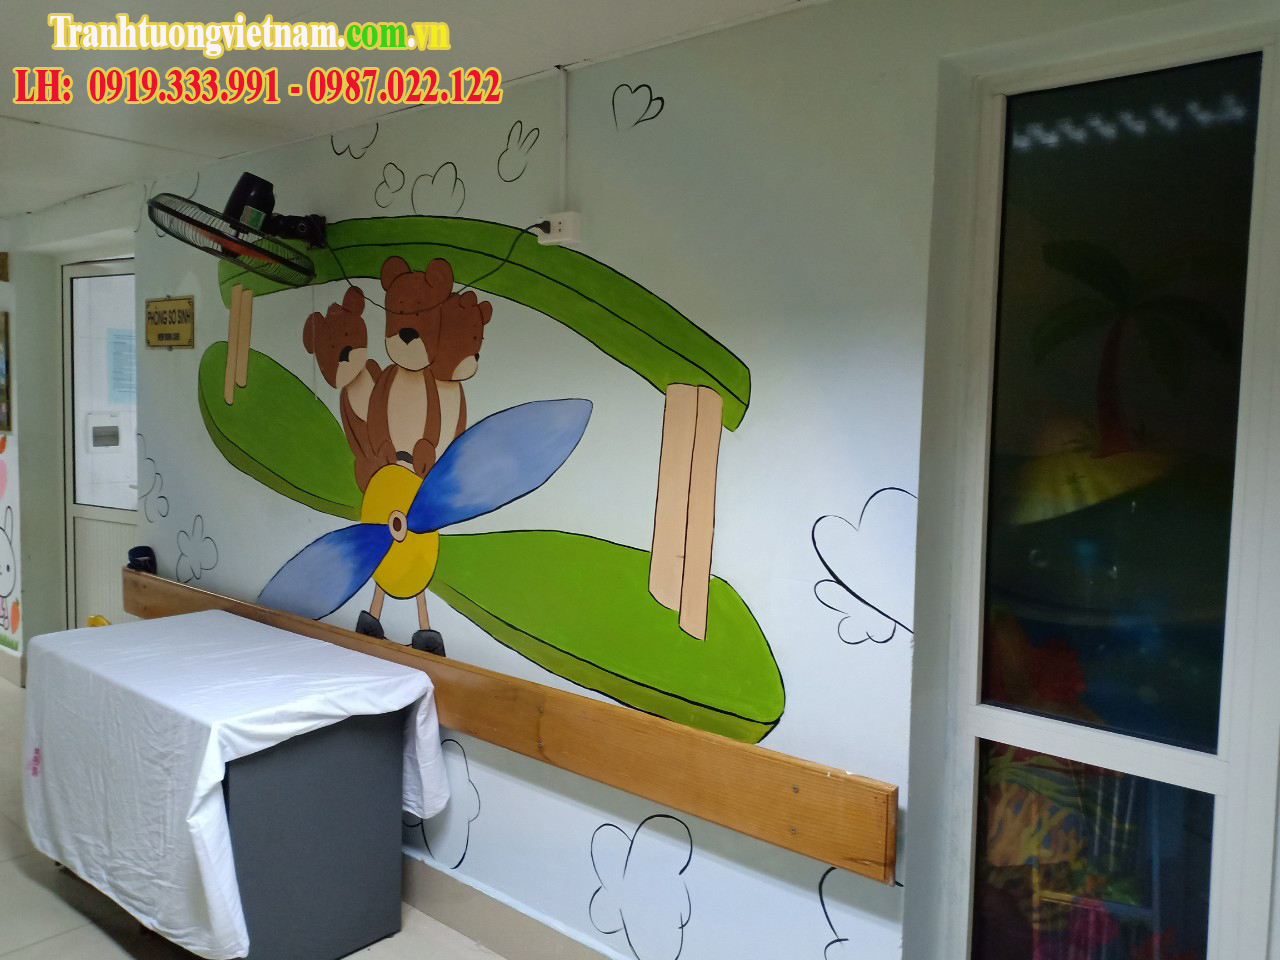 Vẽ tranh tường trang trí bệnh viện